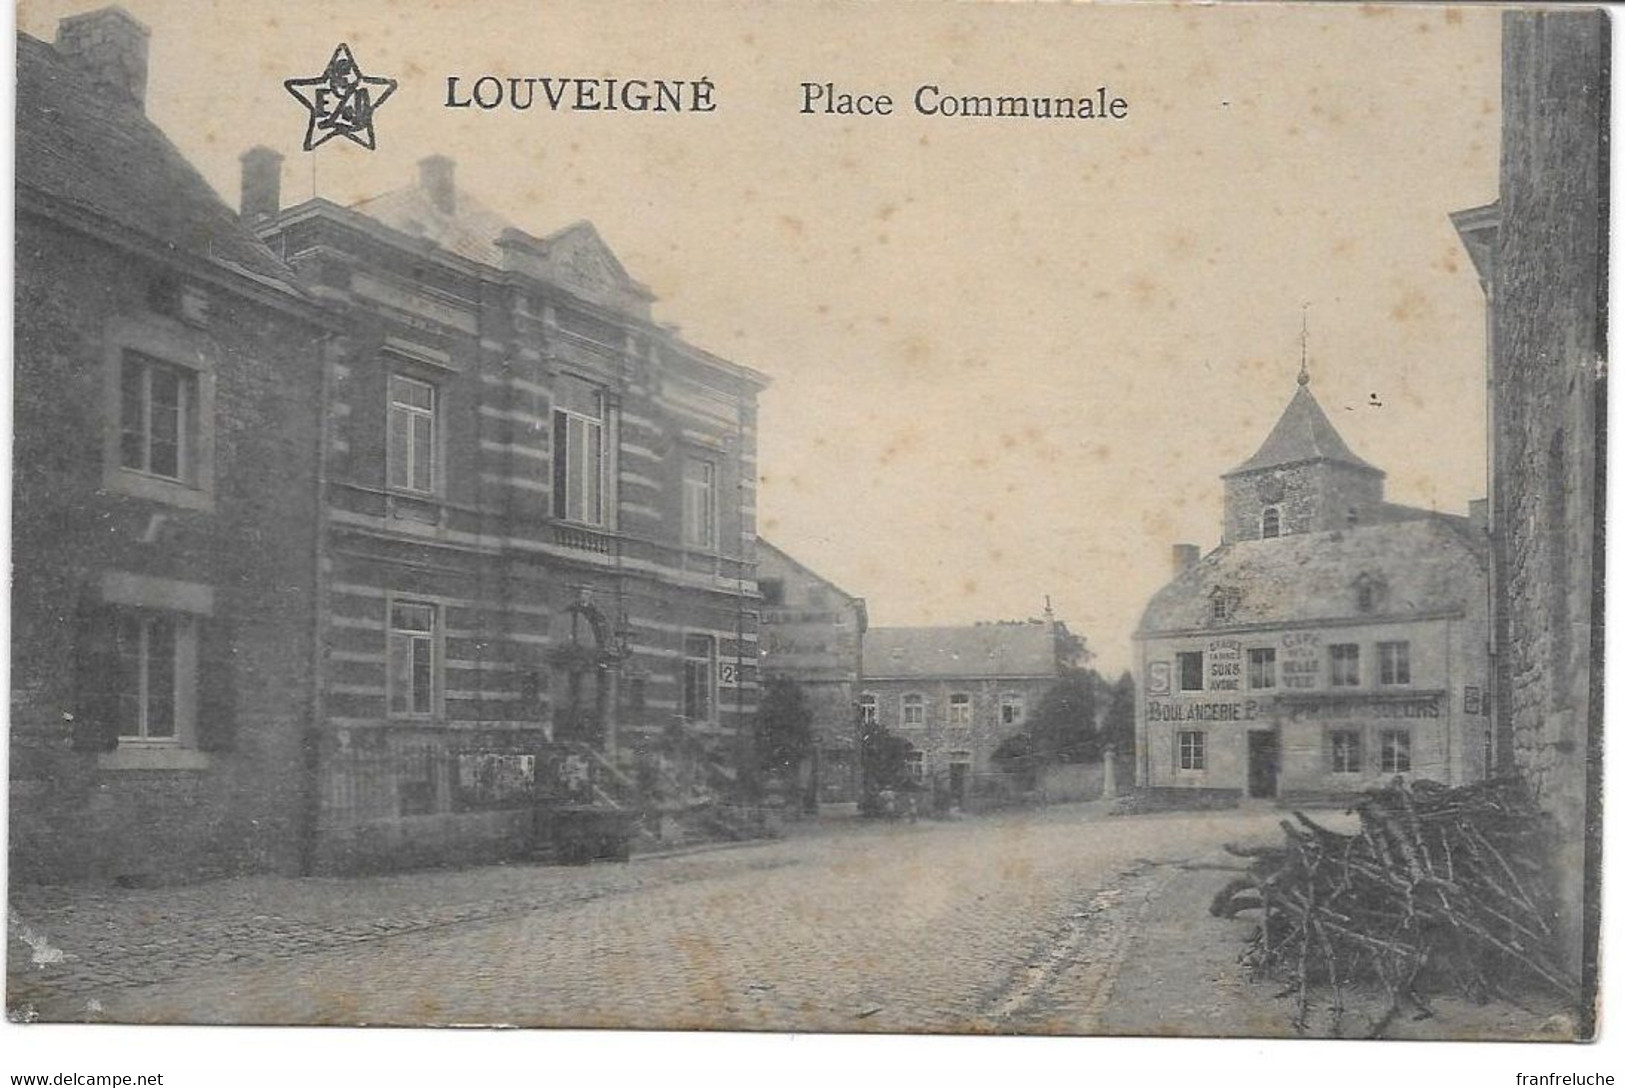 LOUVEIGNE (4140) Place Communale - Sprimont